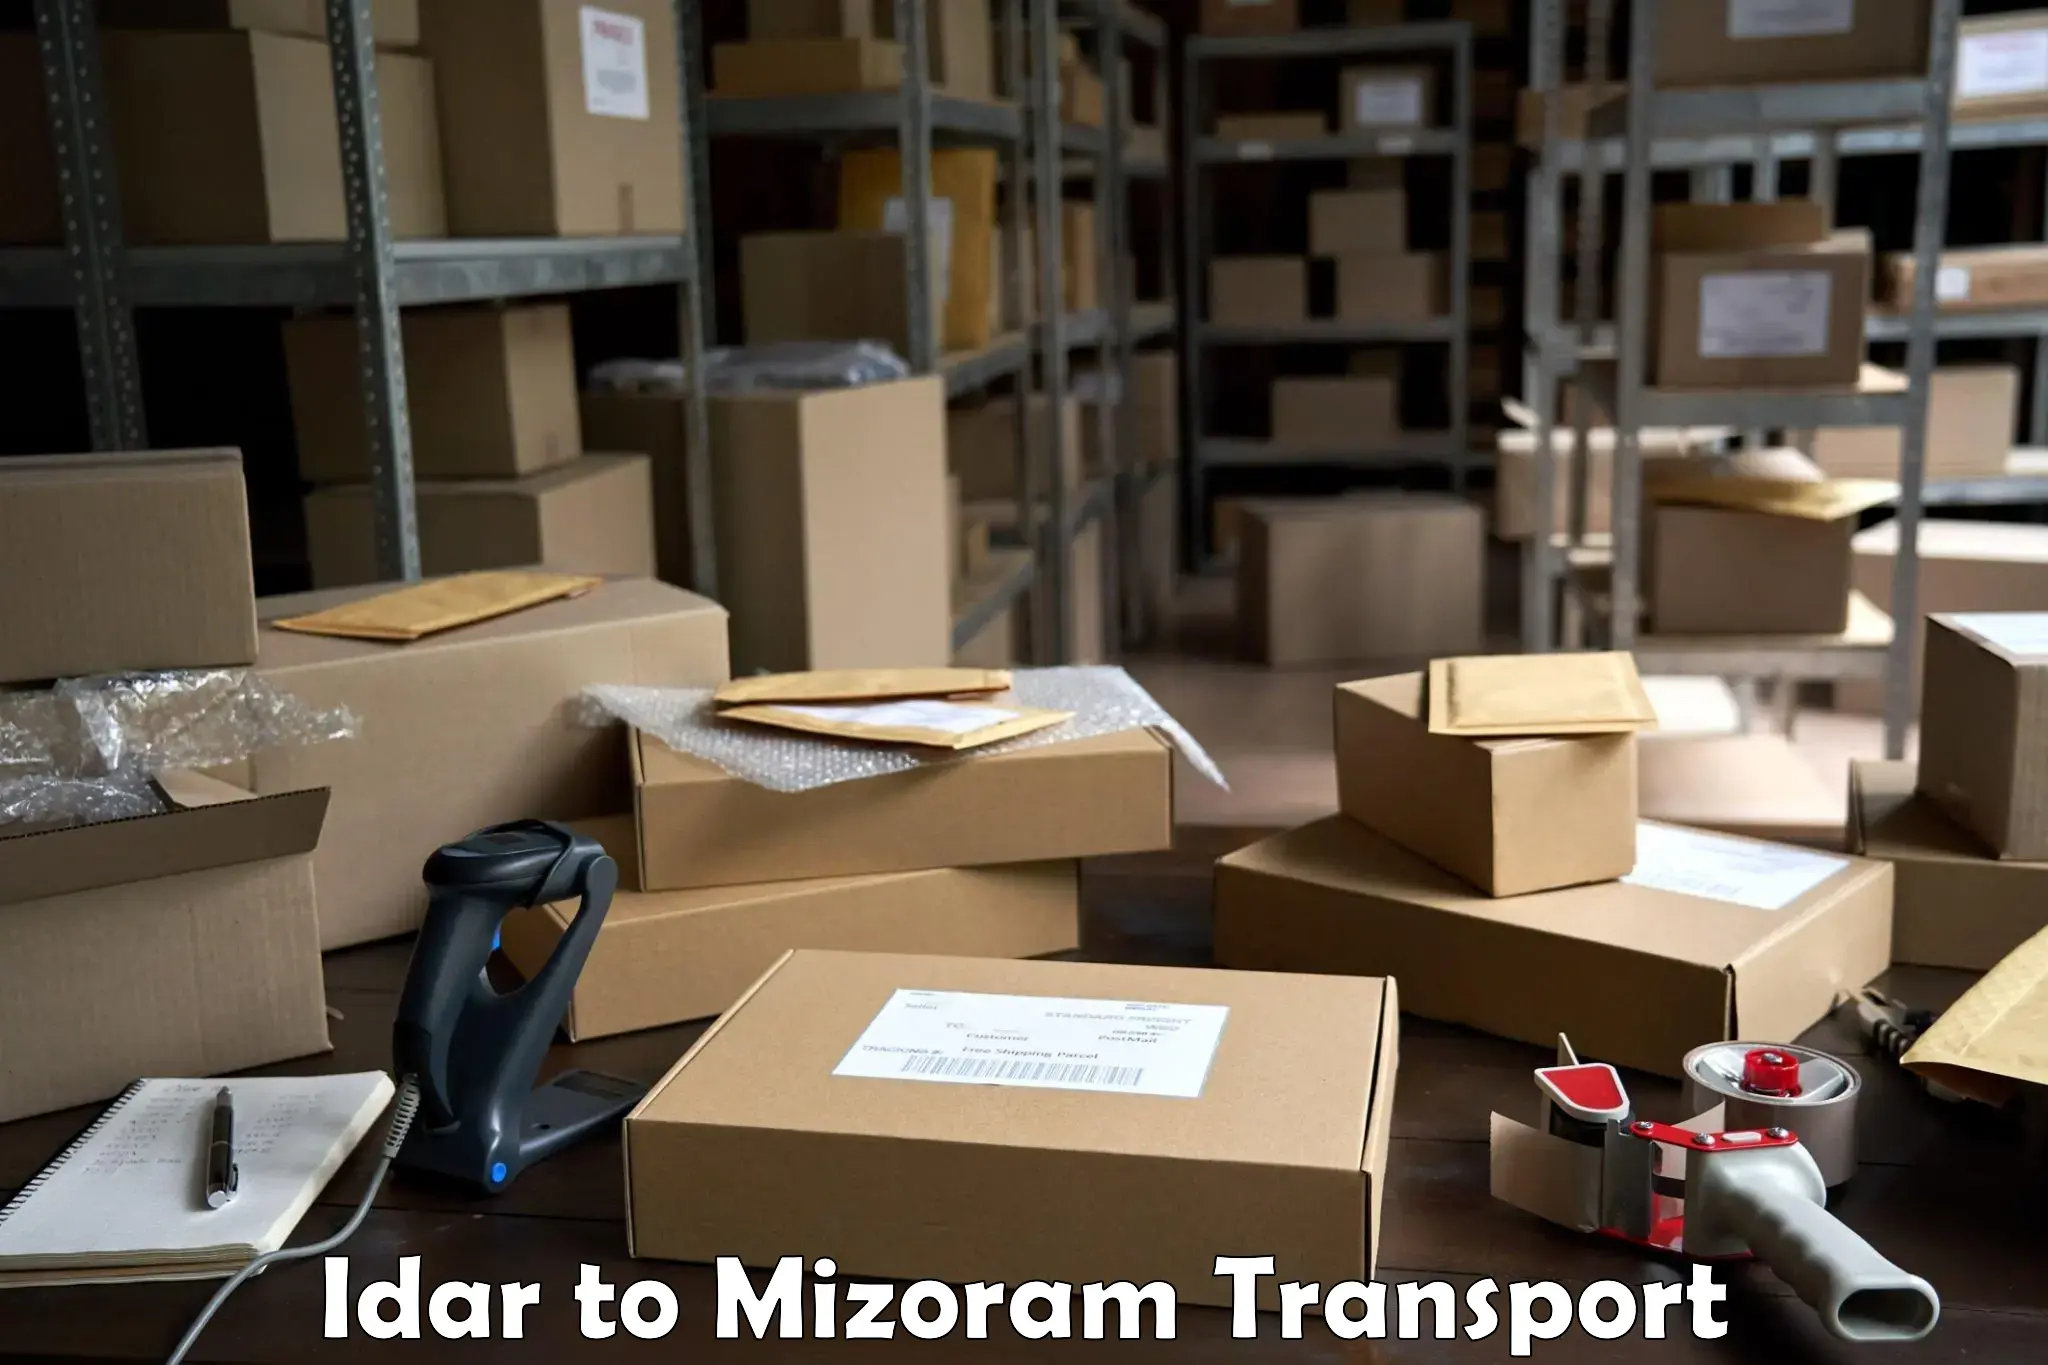 Transportation solution services in Idar to Mizoram